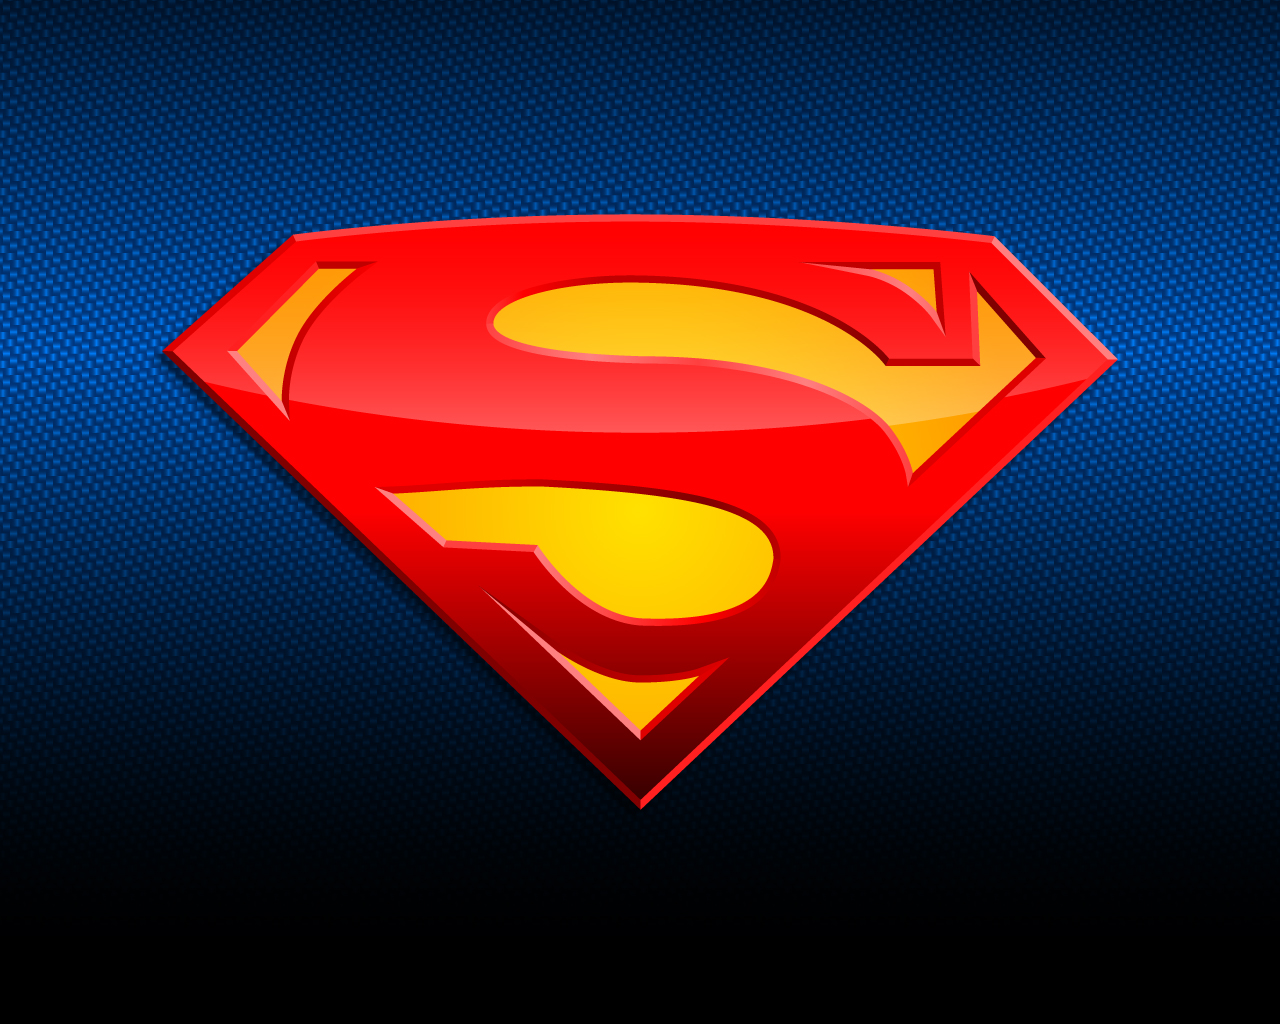 Imgenes de Superheroes Superman Wallpapers Comics Dc Comics 1280x1024